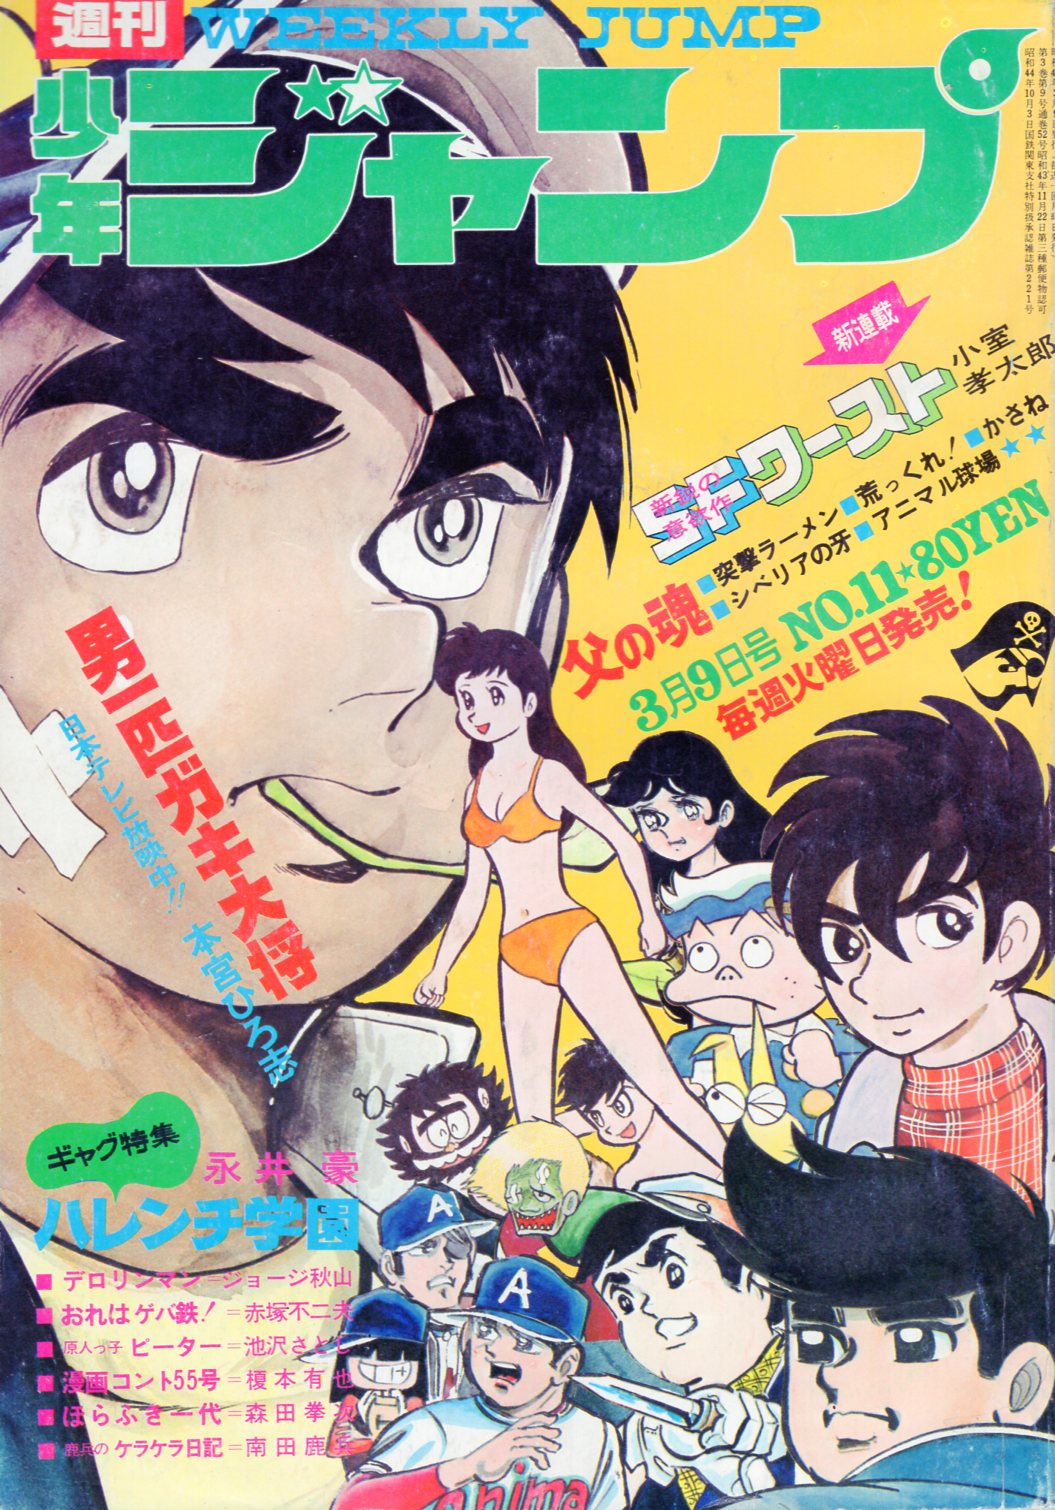 集英社 1970年 昭和45年 の漫画雑誌 週刊少年ジャンプ 1970年 昭和45年 11 7011 まんだらけ Mandarake